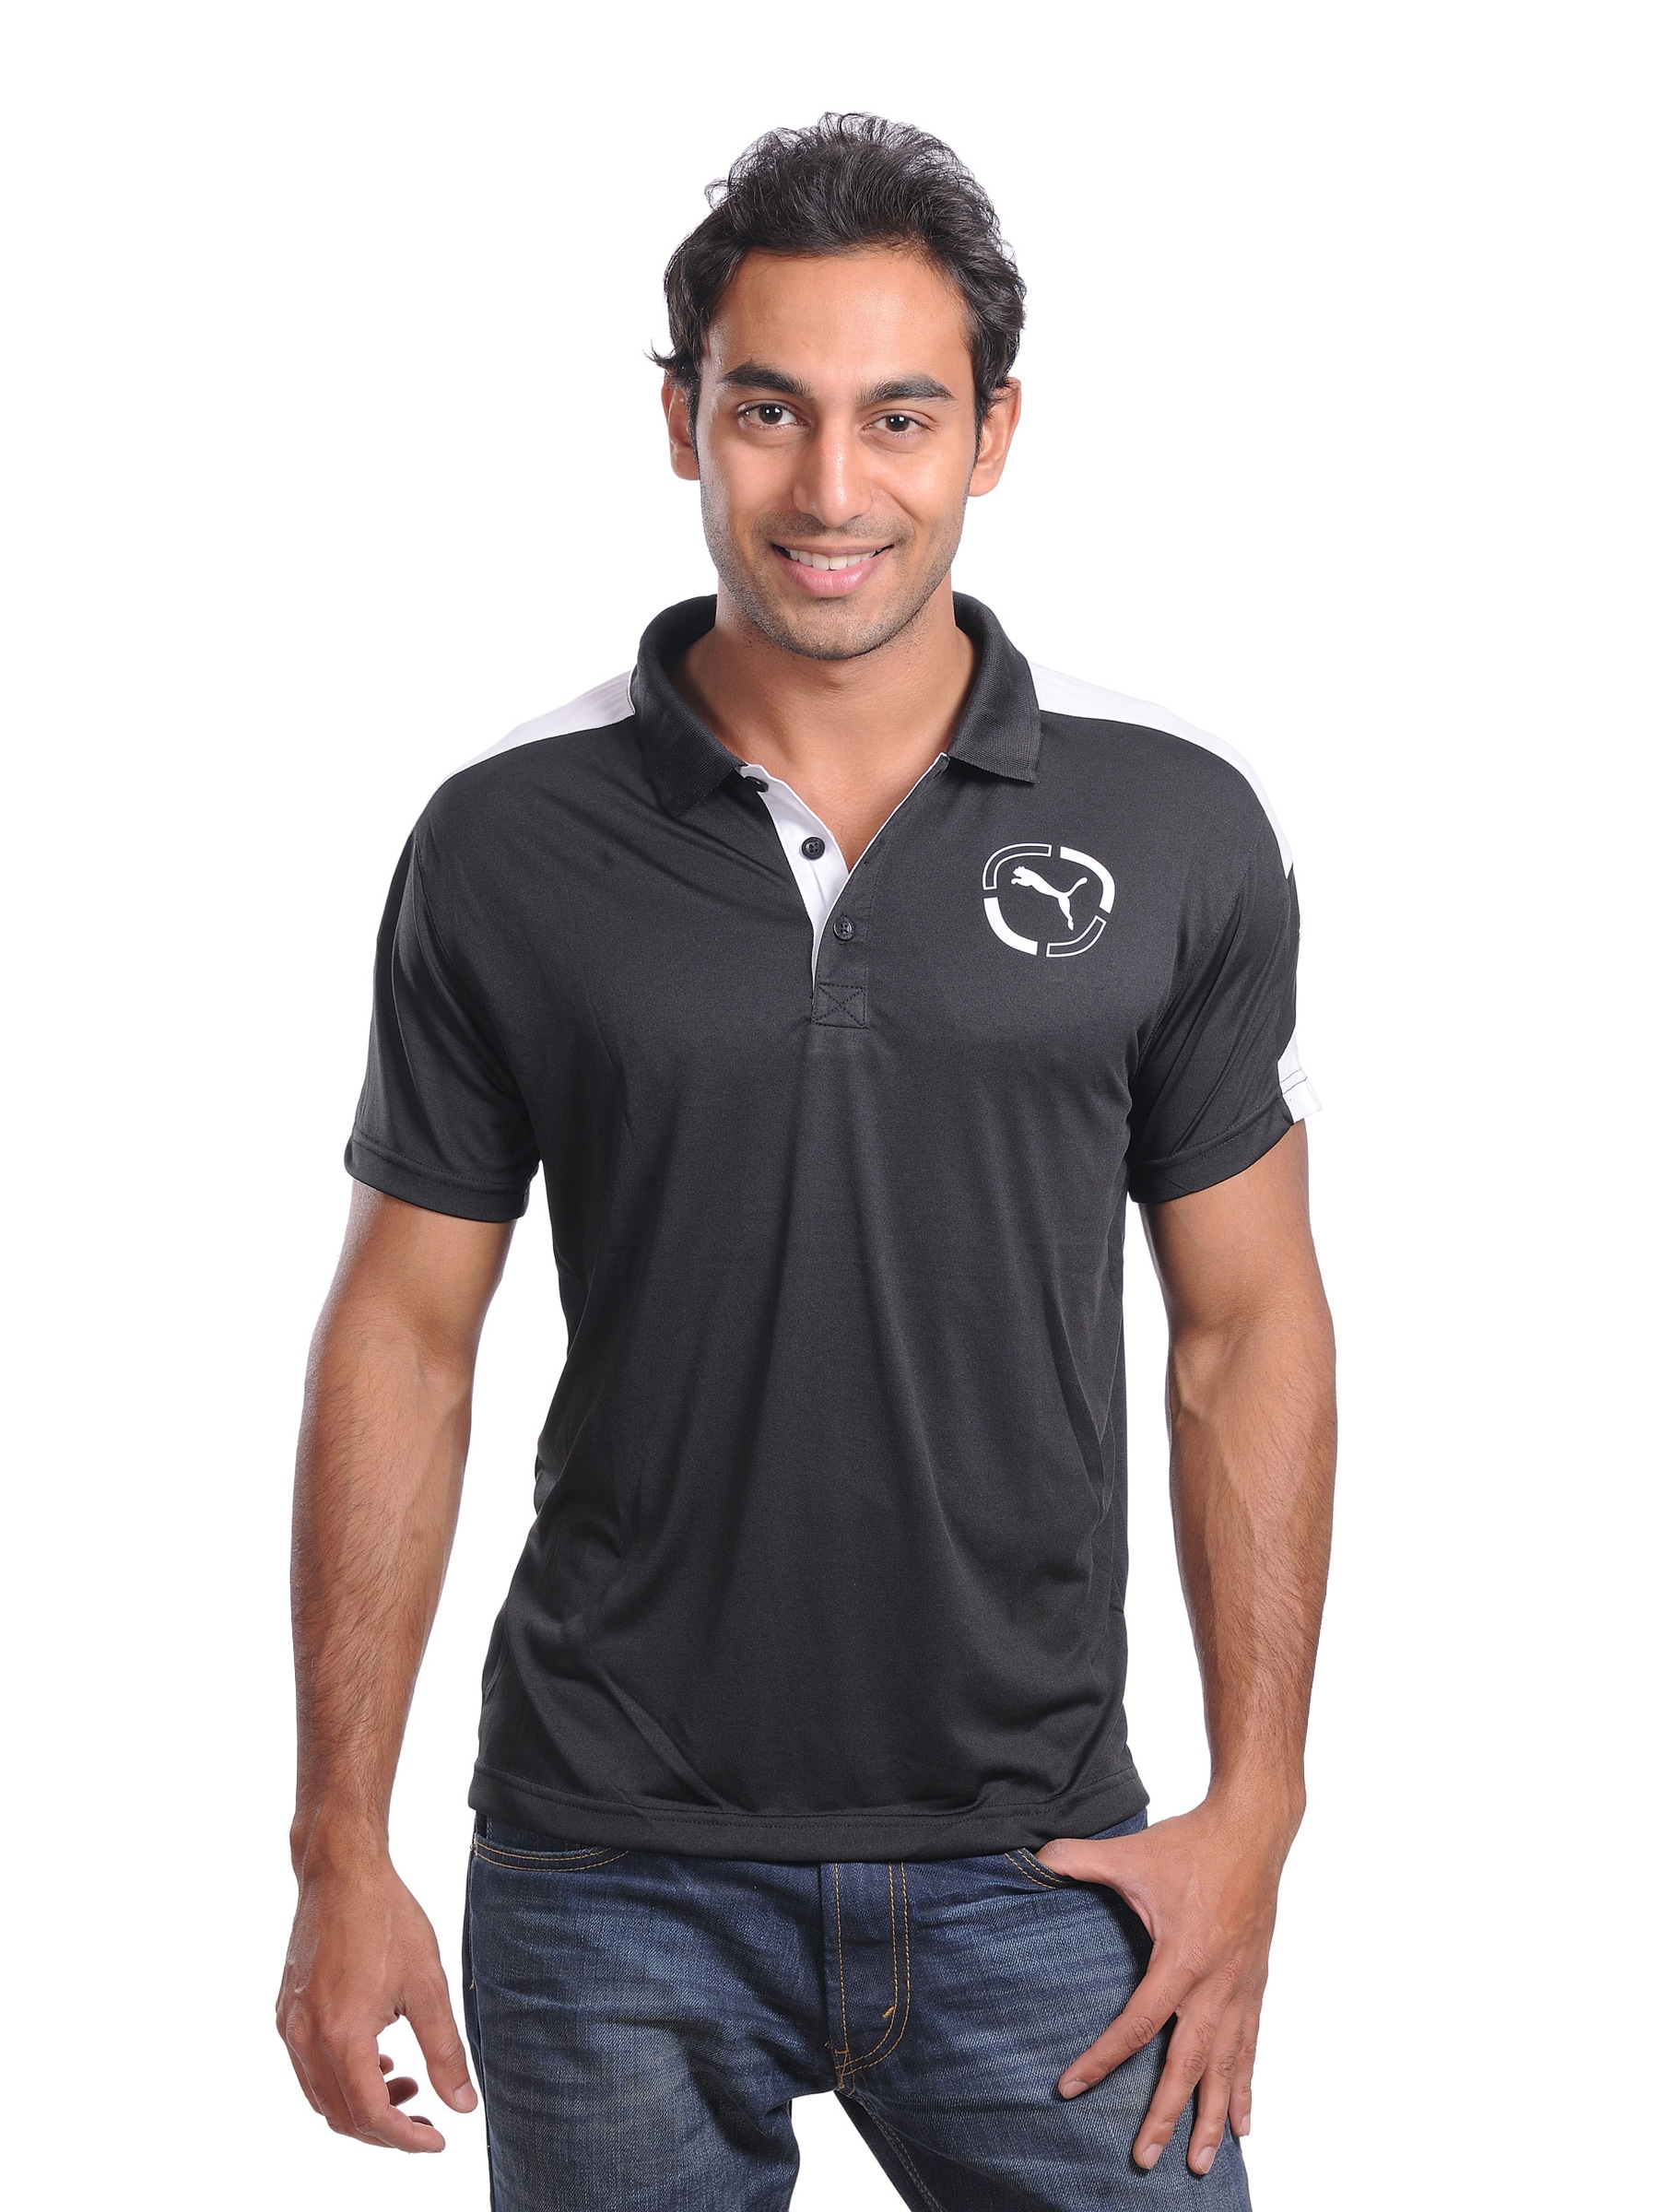 Puma Mens Slim Fit Black Polo T-shirt